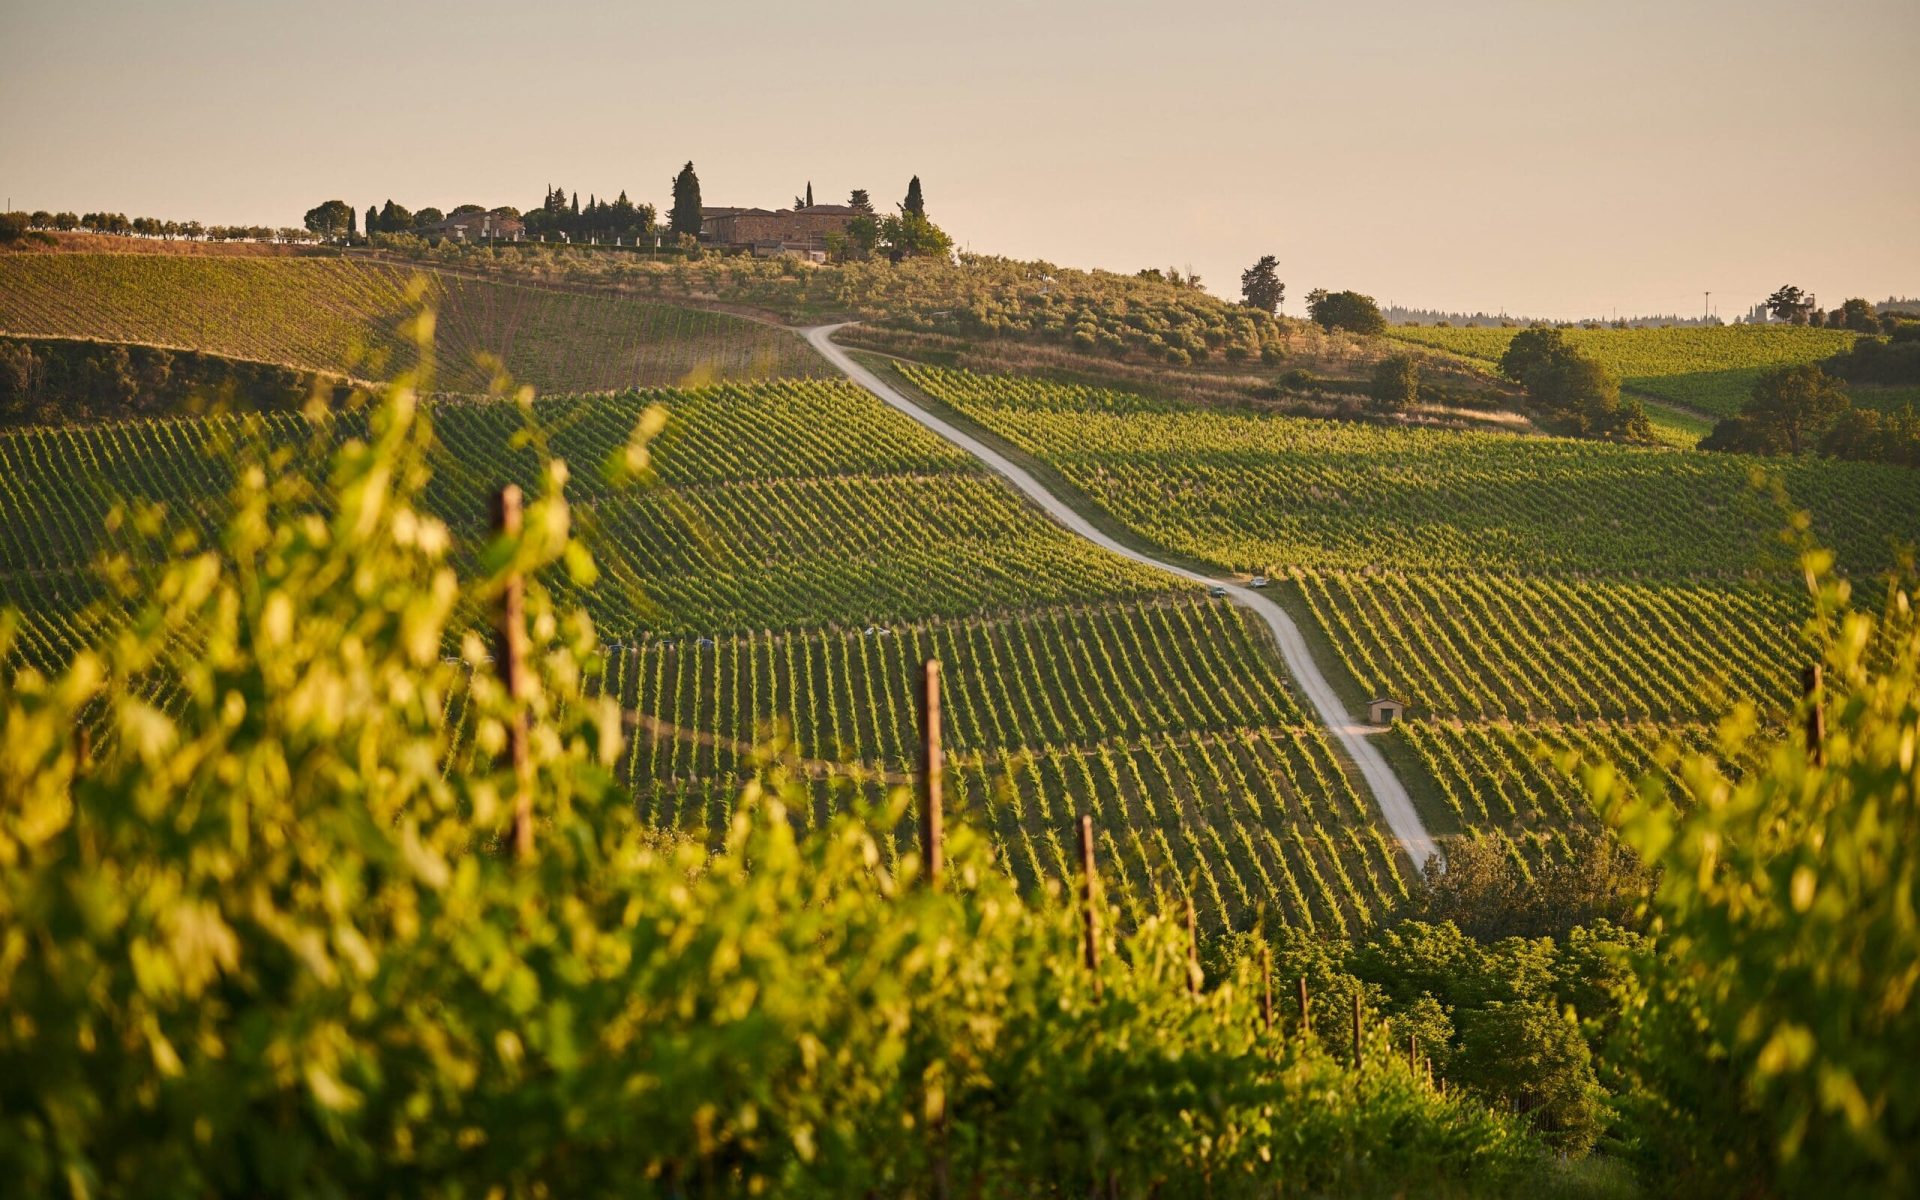 Scenic vineyard in Italy, symbolizing wine trips